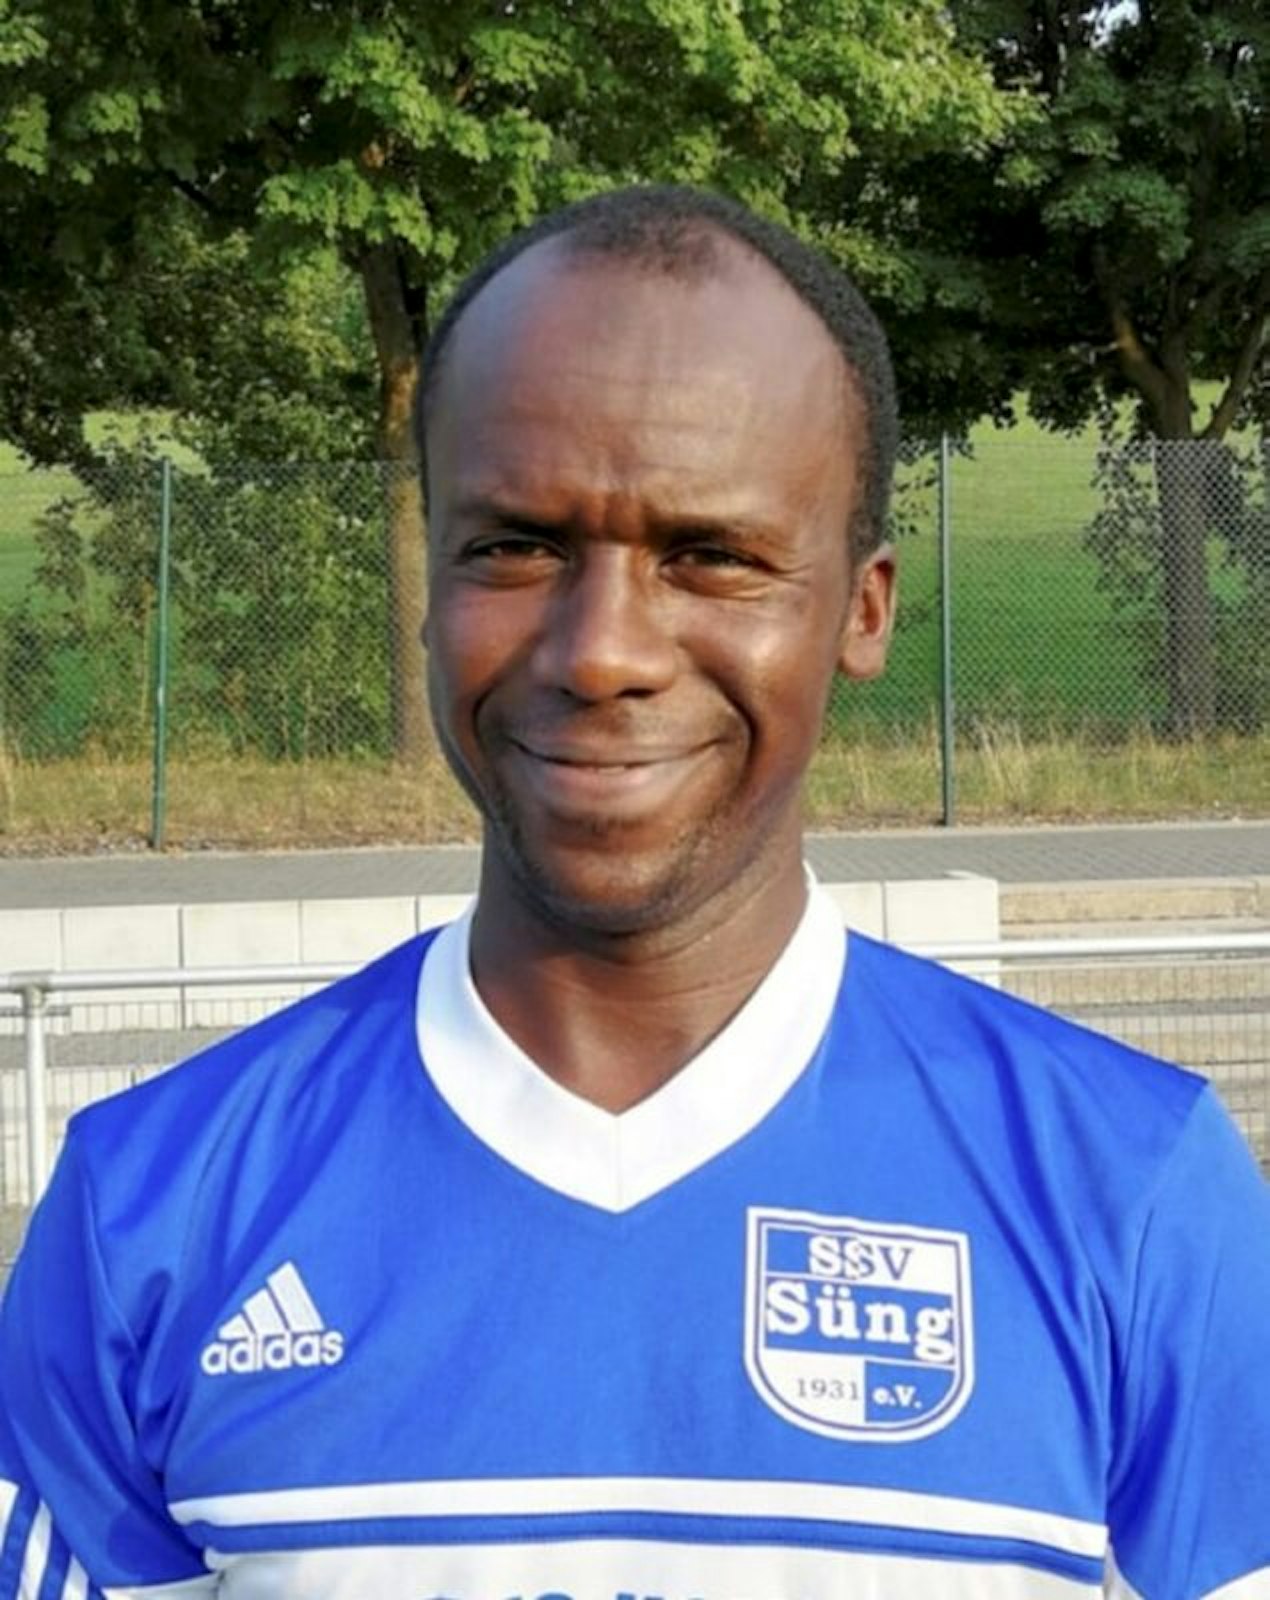 Habib Adra spielte Fußball beim SSV Süng und dem TuS Lindlar und arbeitete bei einer Tankstelle in Lindlar.